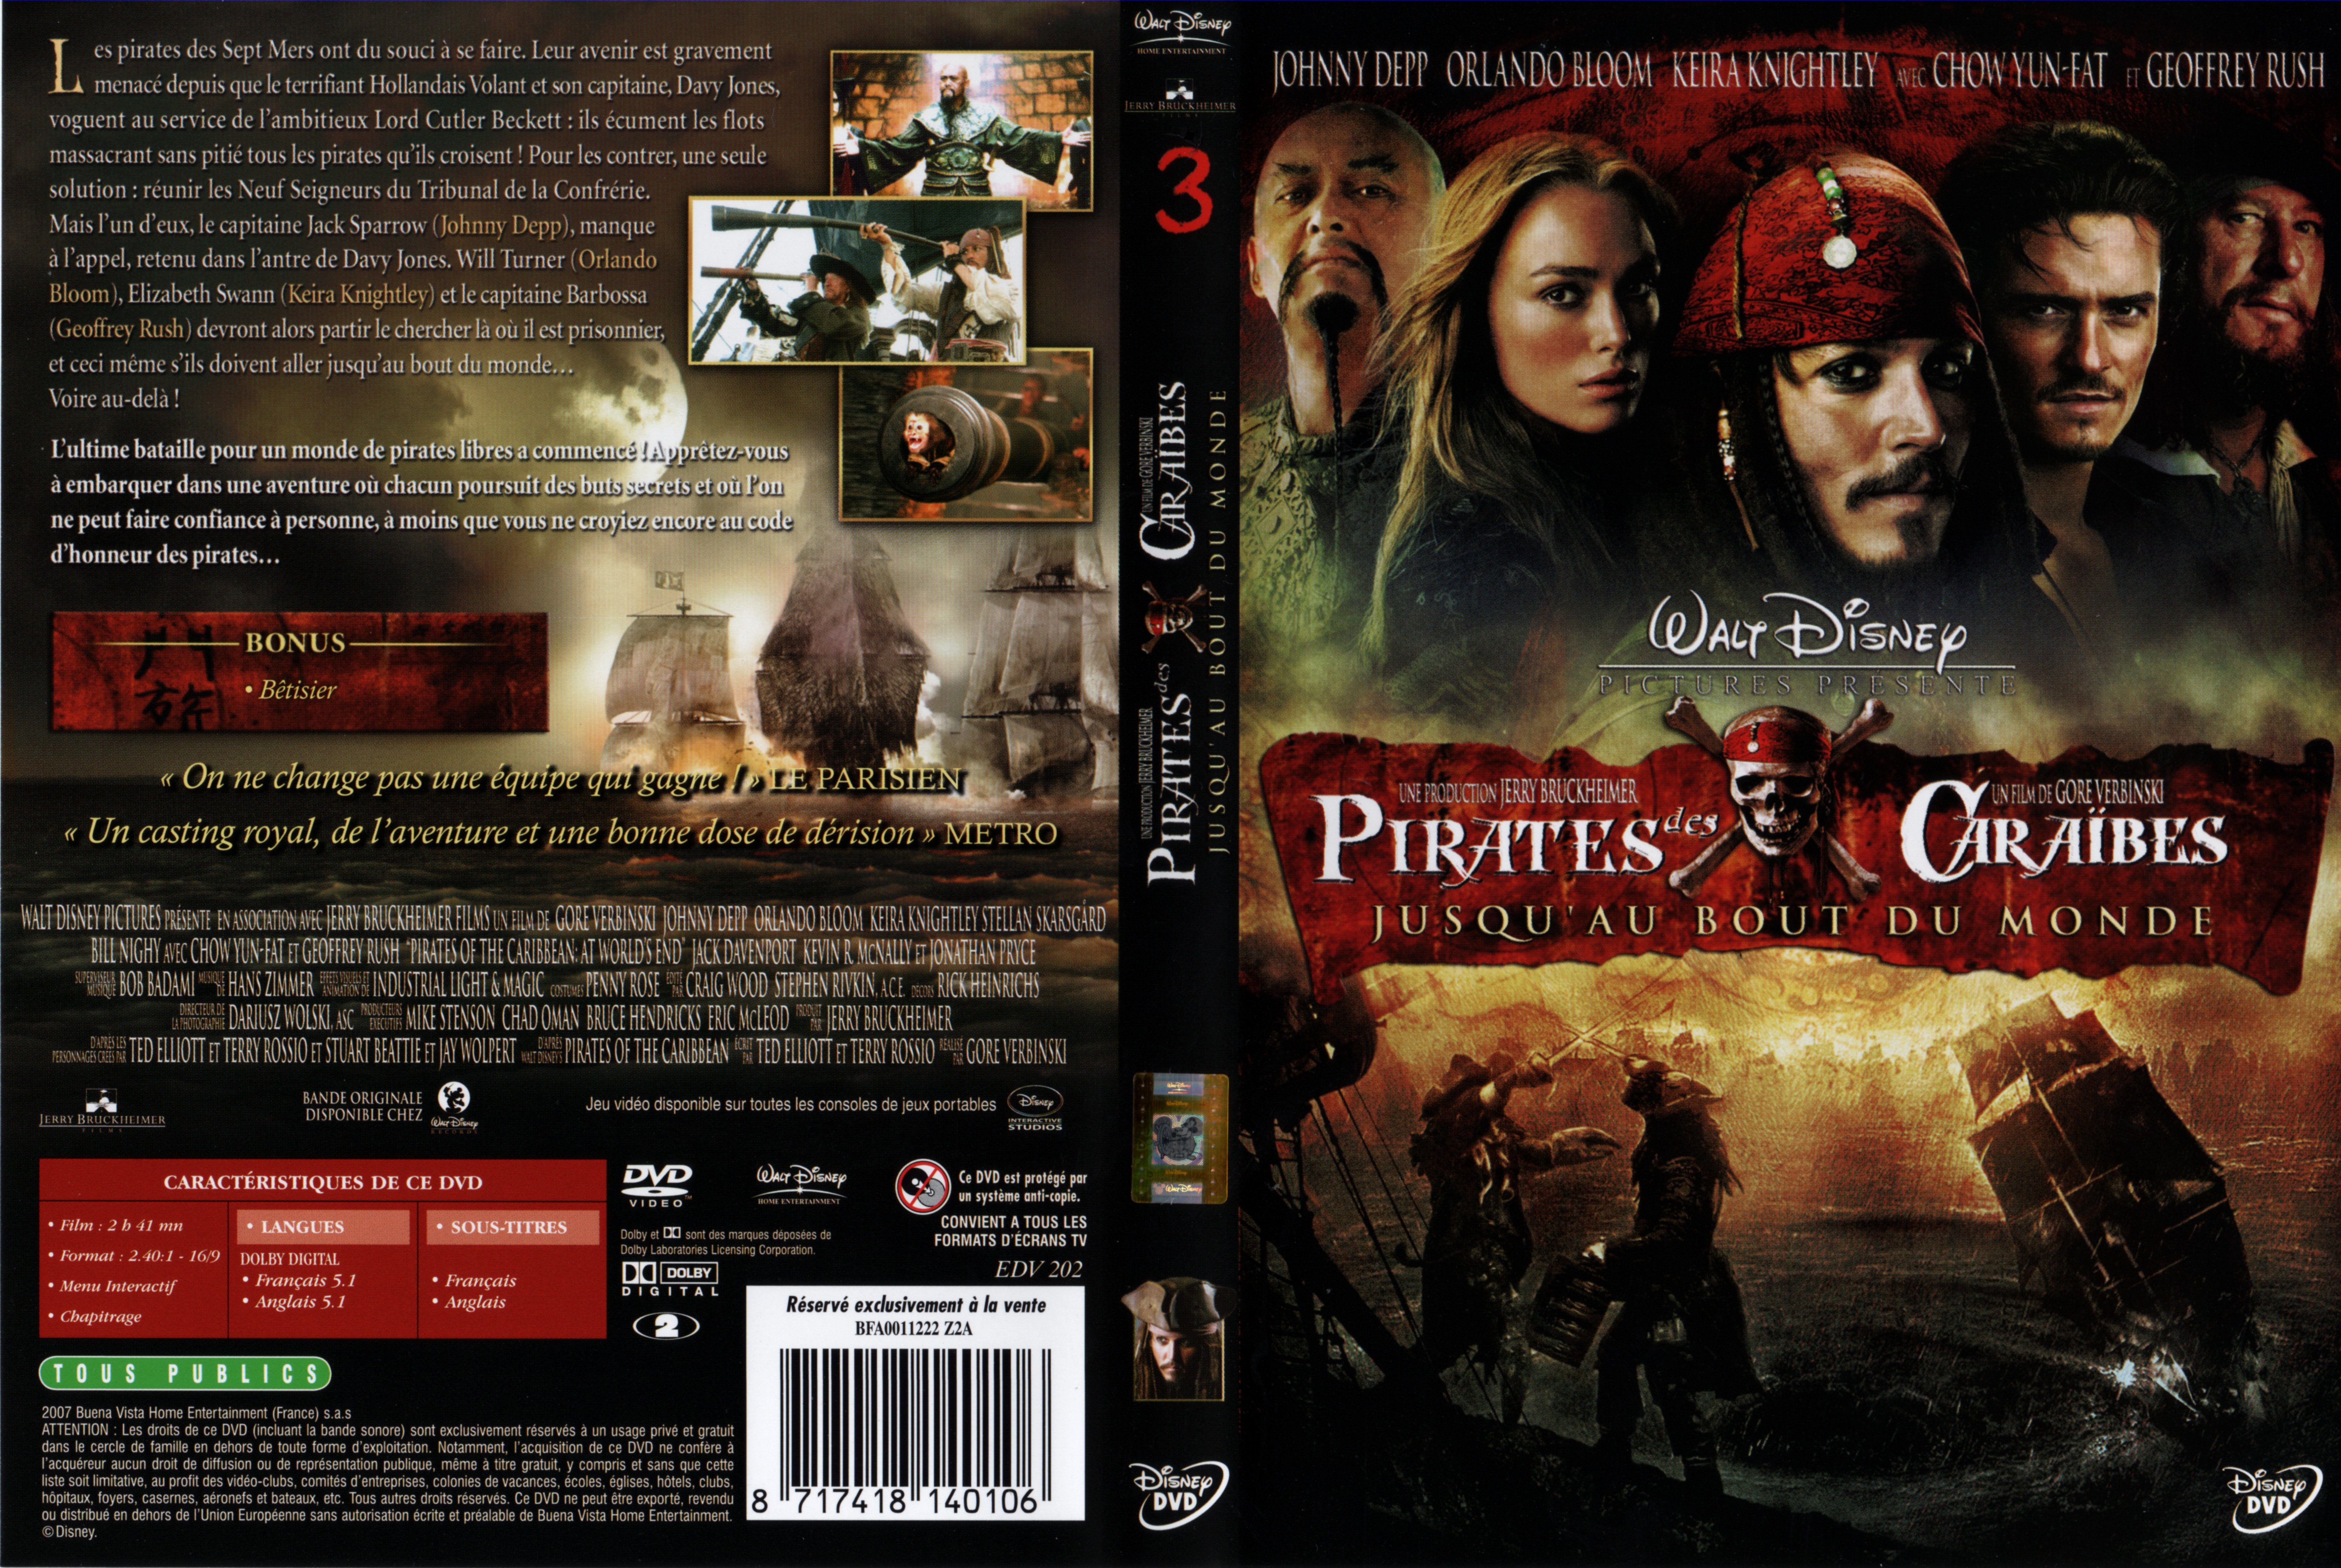 Jaquette DVD Pirates des caraibes 3 v2